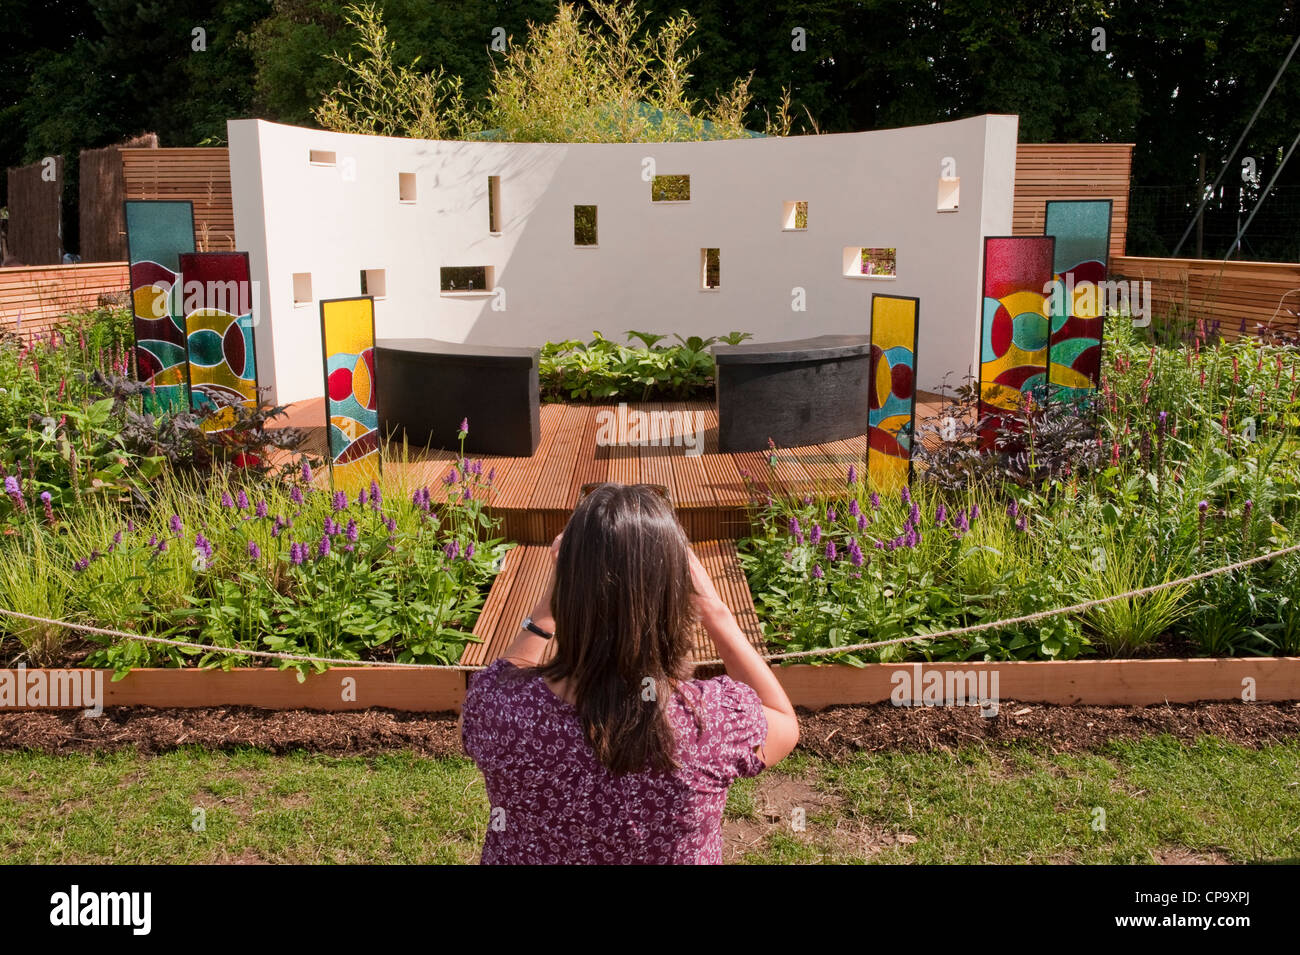 La donna prende la foto del muro del suono in bella musica interattiva terapia "giardino un suono Giardino' - RHS Flower Show, Tatton Park, Cheshire, Inghilterra, Regno Unito. Foto Stock